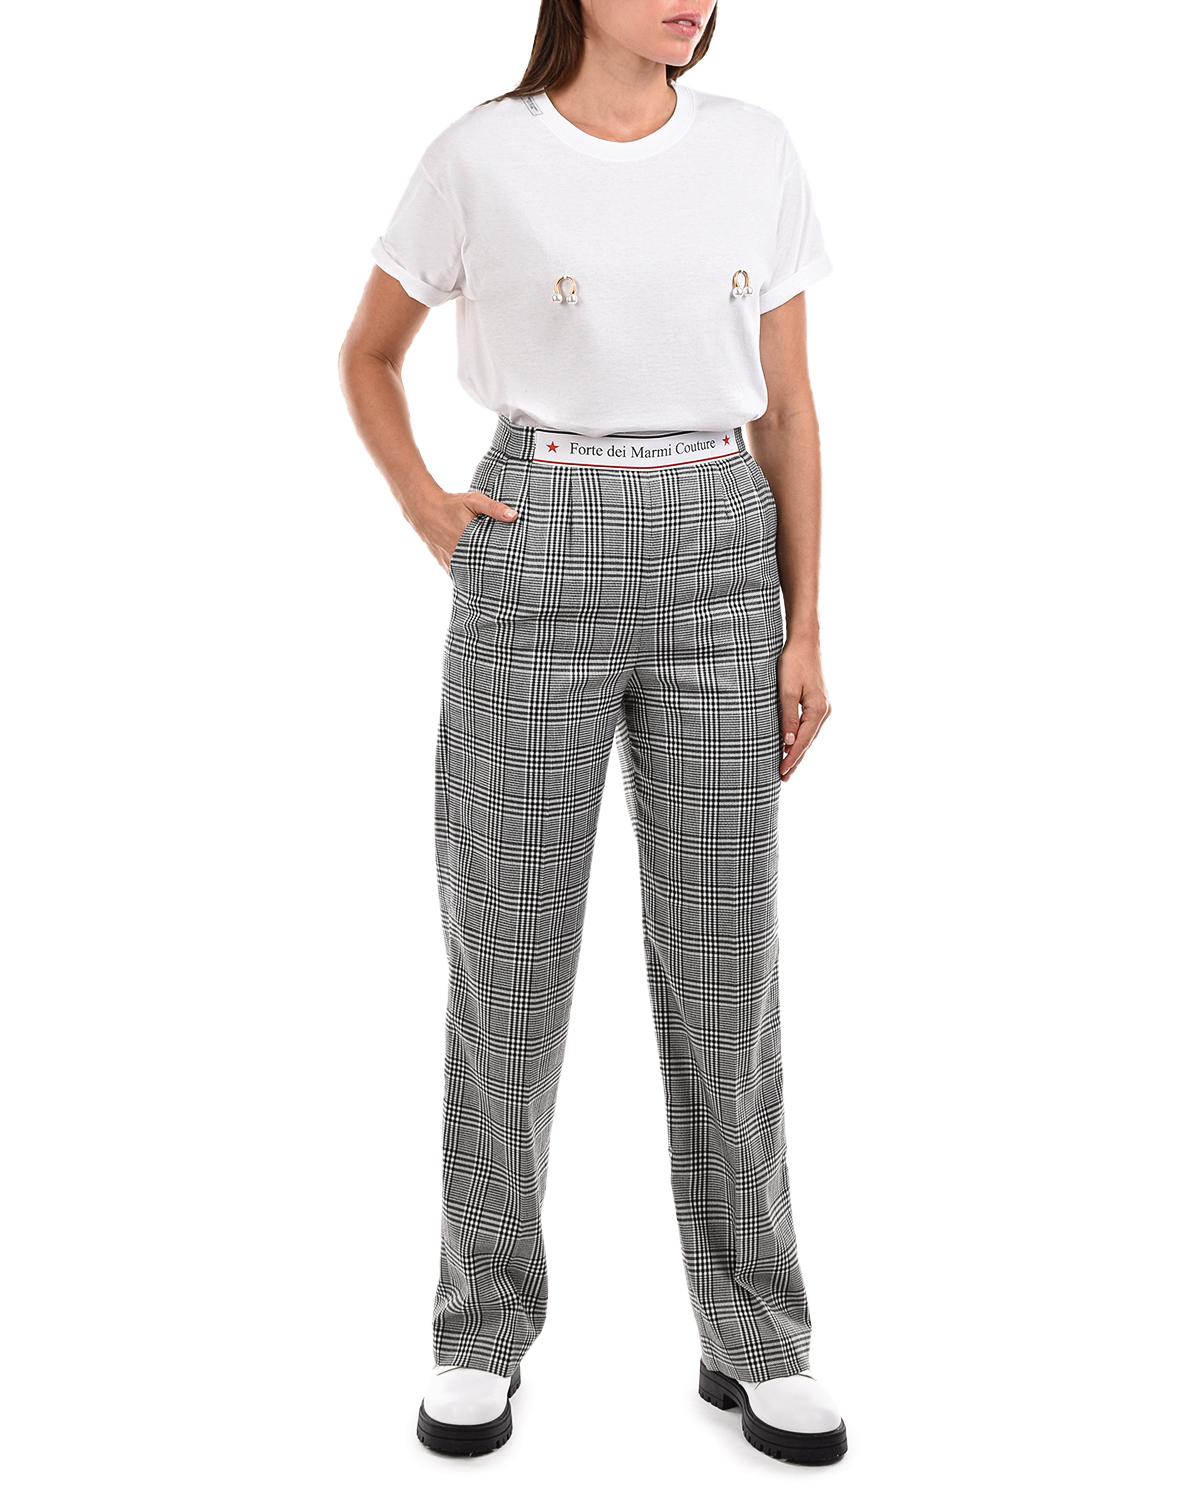 Прямые брюки в клетку Forte dei Marmi Couture, размер 42, цвет серый - фото 3